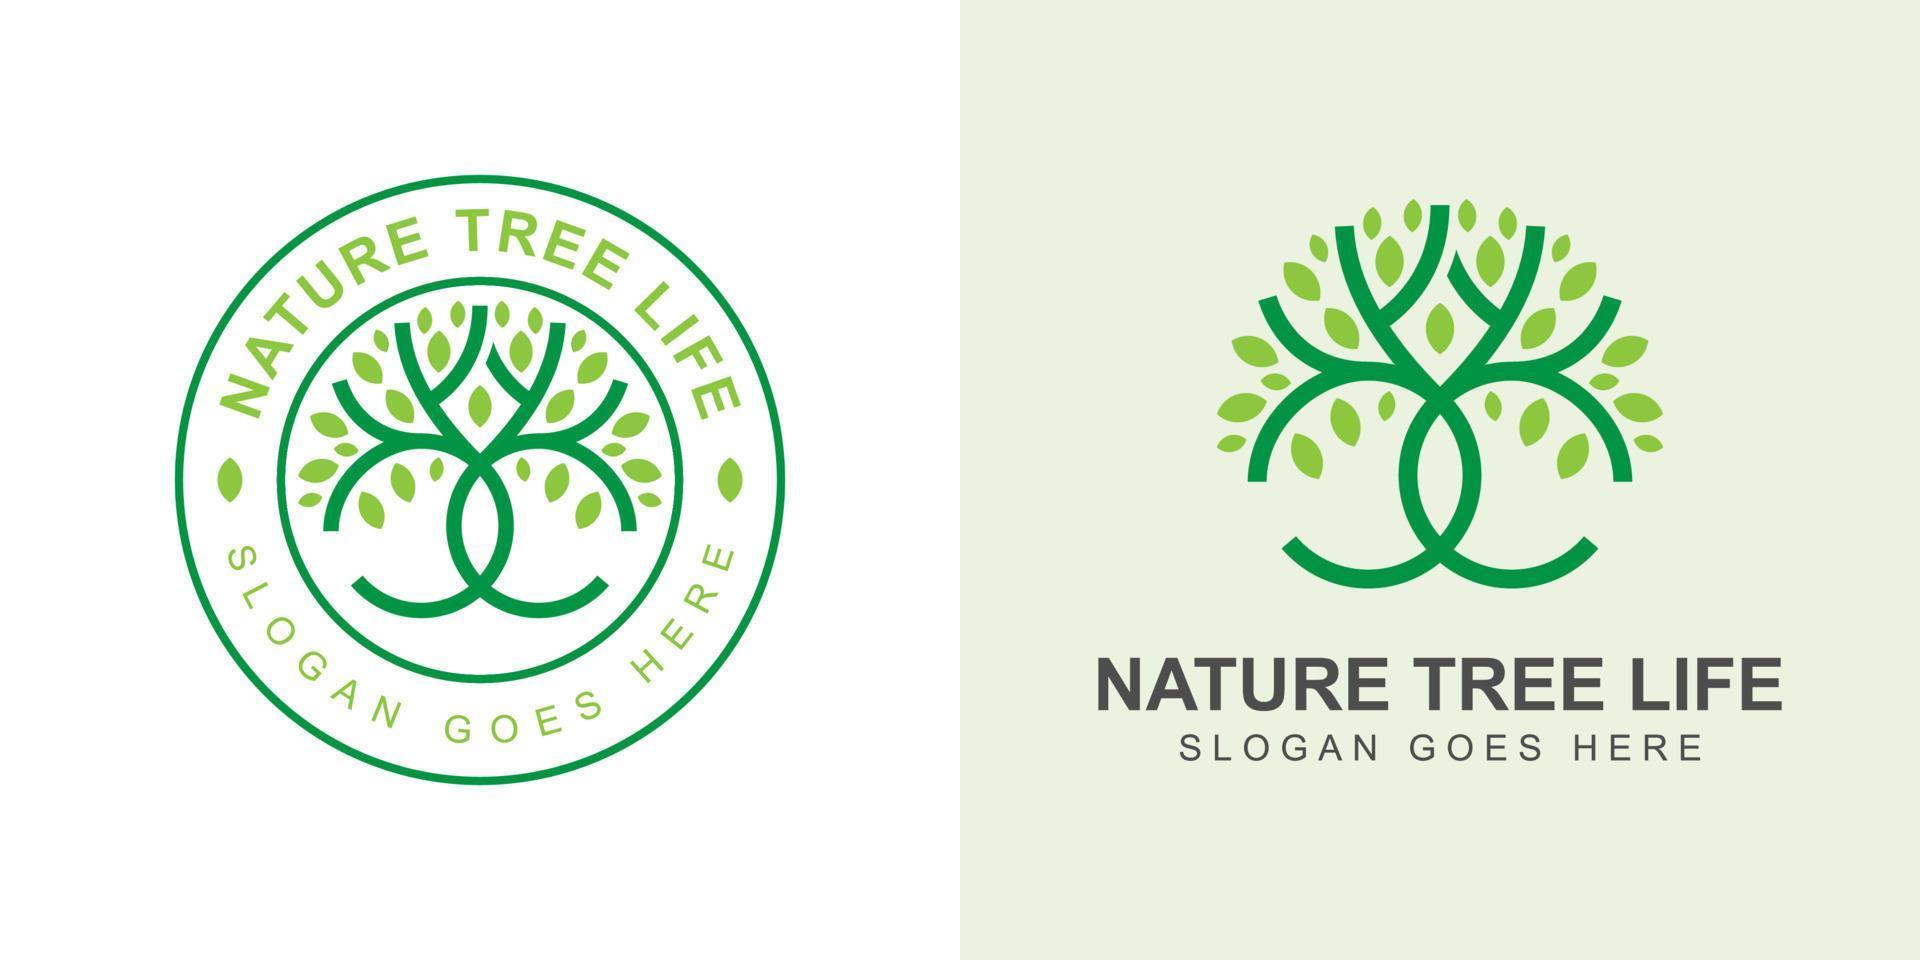 stile artistico della linea della vita dell'albero della natura con design del logo distintivo vettore